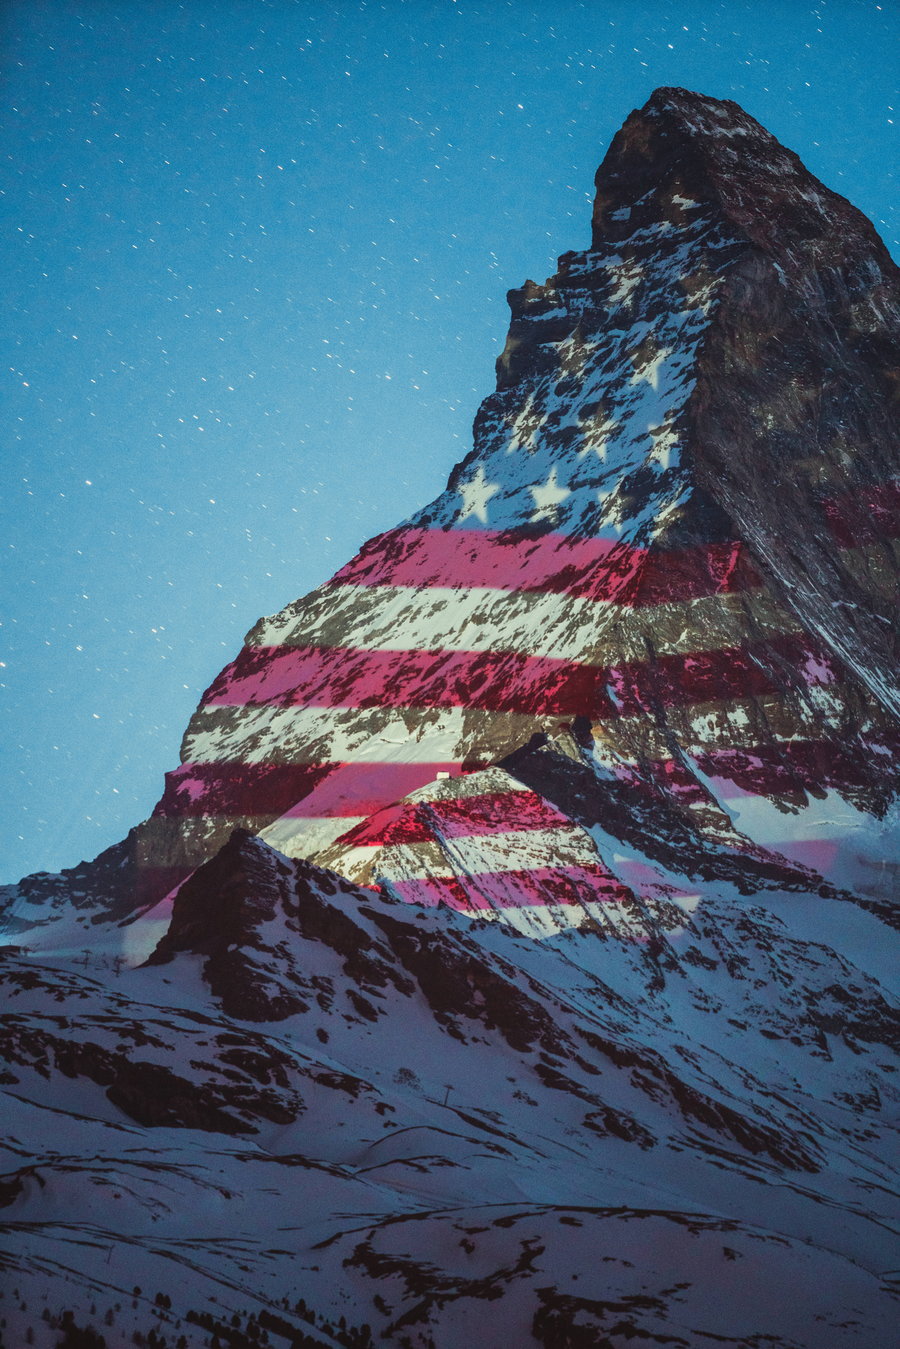 Zermatt Matterhorn projects the American flag over the Matterhorn mountain as a show of solidarity during the deadly coronavirus pandemic. 